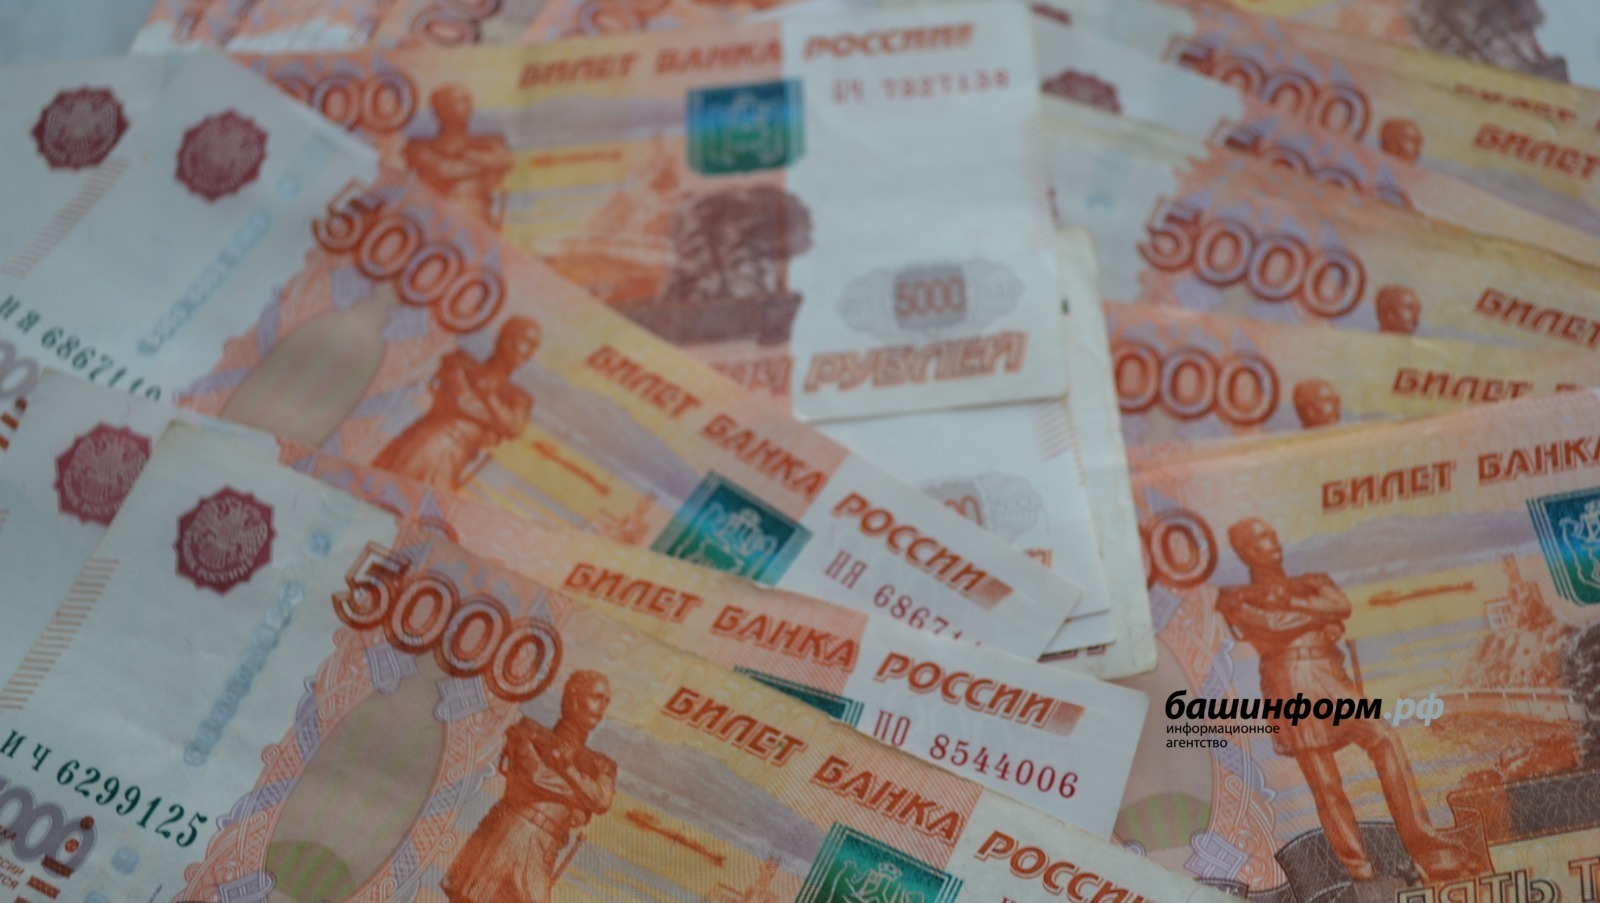 В Уфе медика обманули на более чем 2 млн рублей от имени минздрава республики, ФСБ и банка